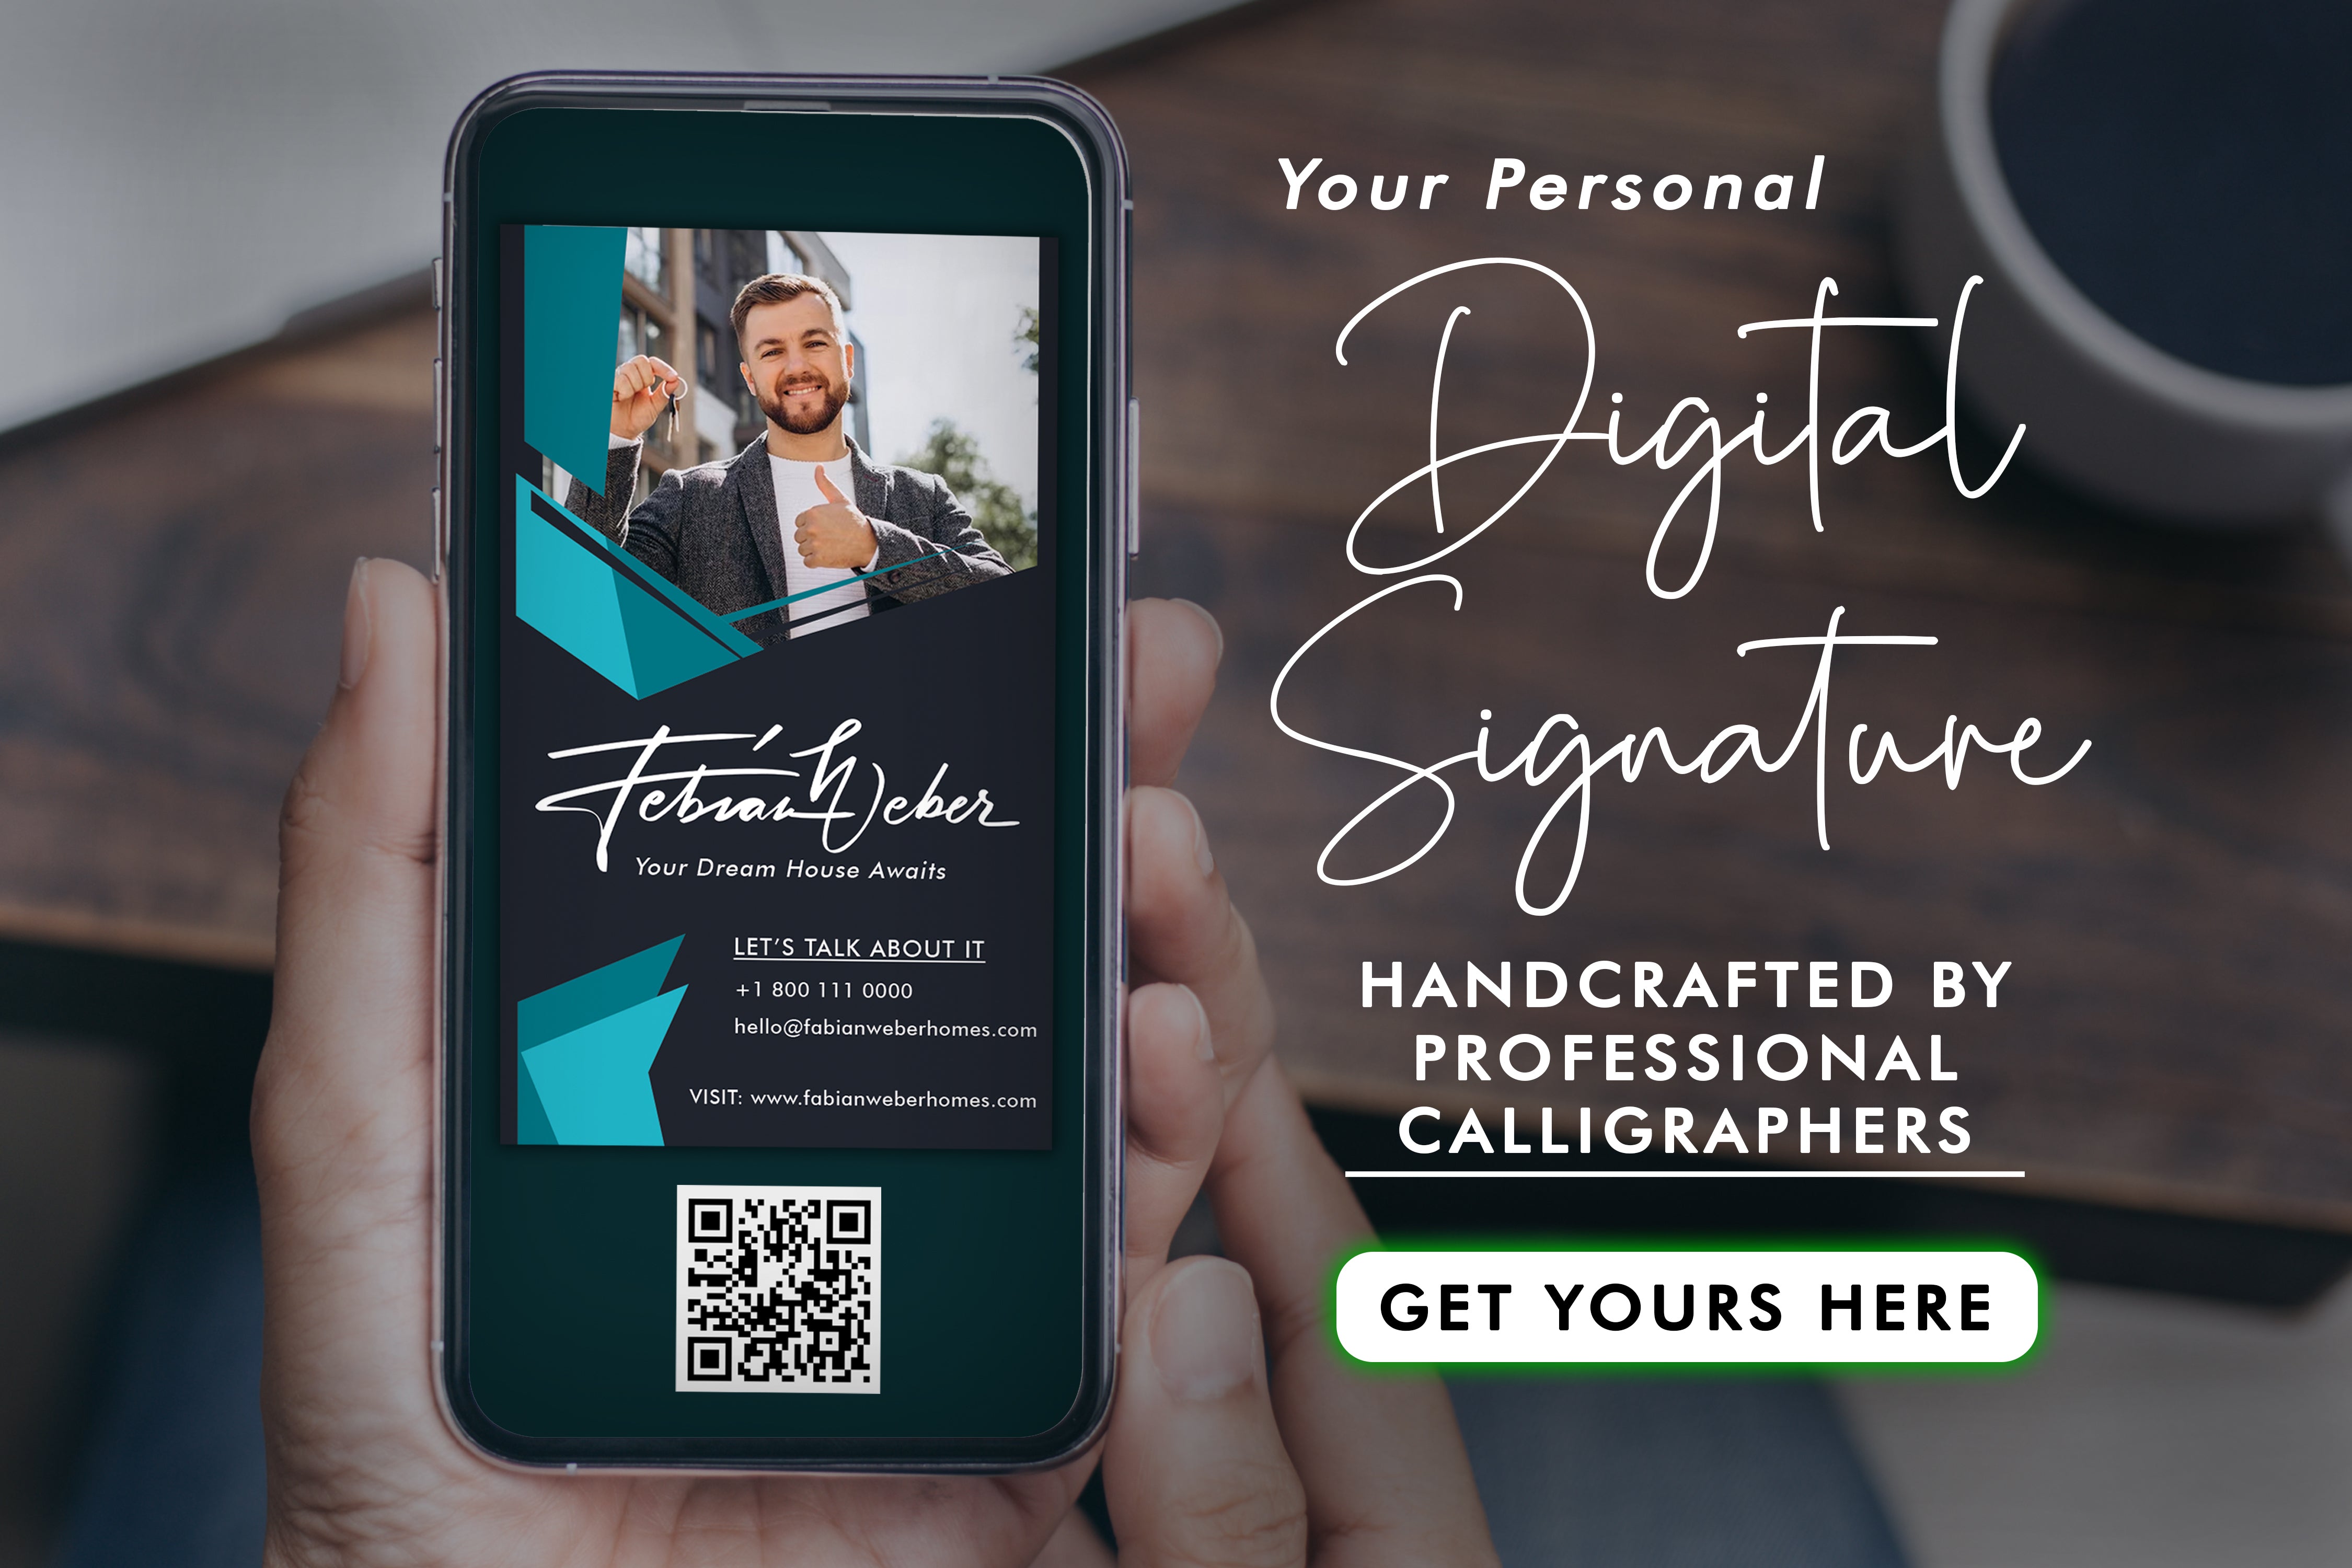 Aprimore a marca com um carimbo digital versátil que oferece autenticidade e personalização. Descubra como elevar a imagem de sua empresa.